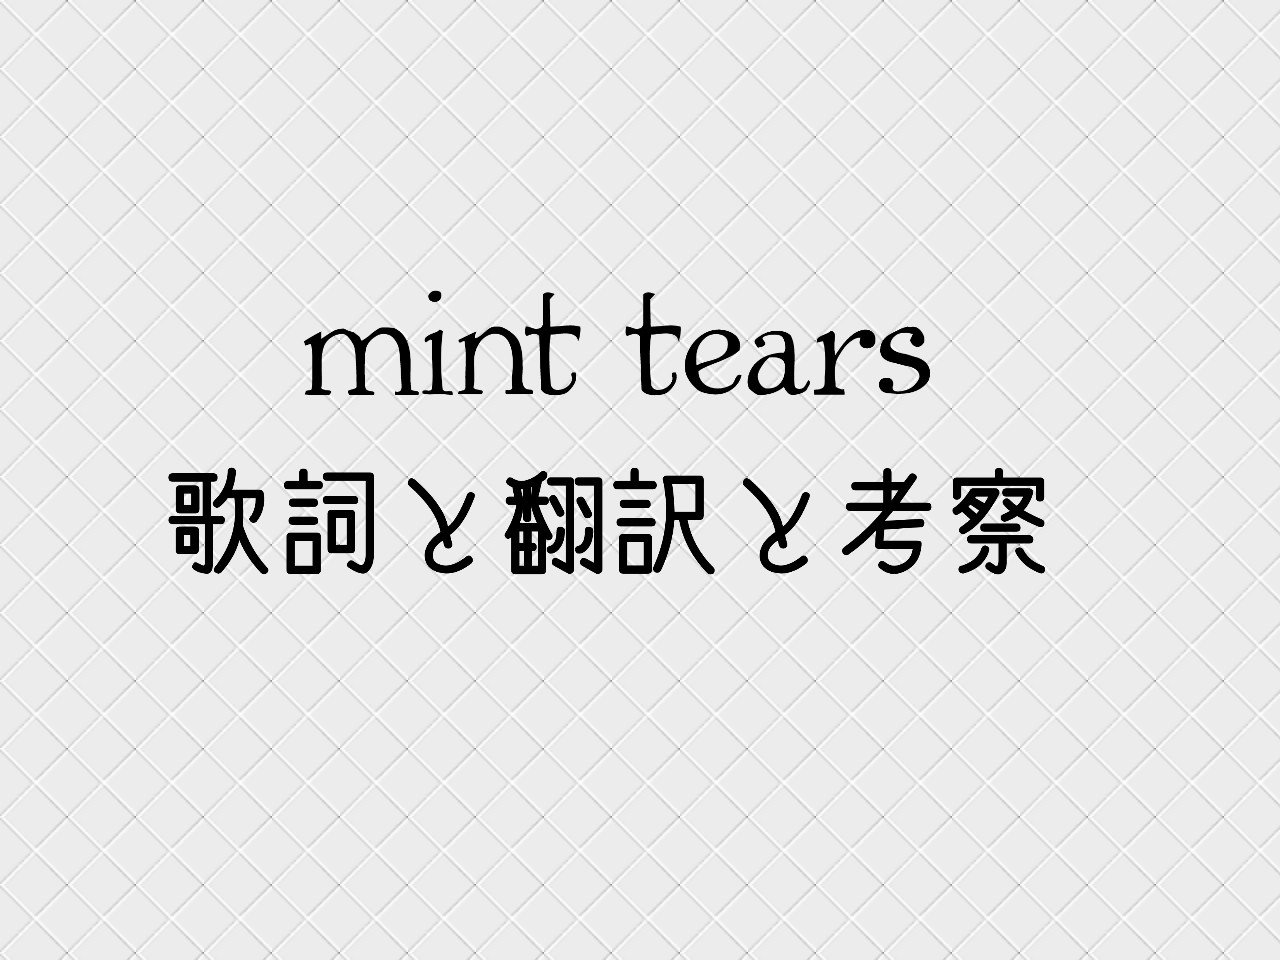 太鼓の達人楽曲 Mint Tearsの歌詞と考察 れぷりか Note